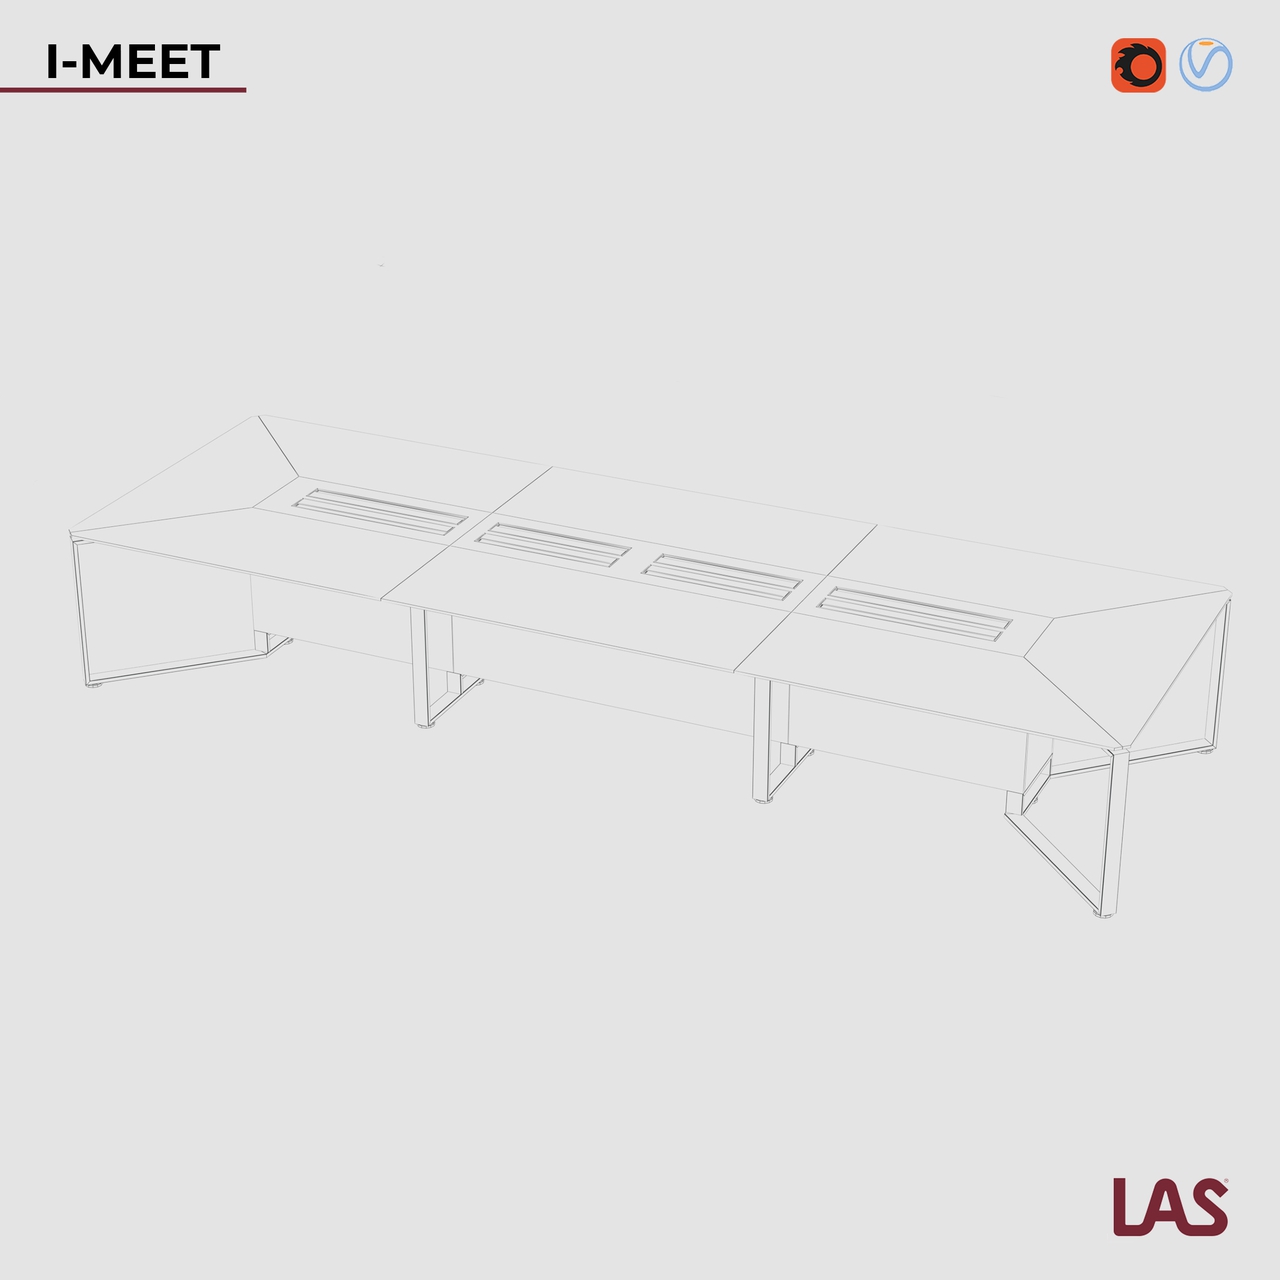 Превью G 3D-модели прямоугольного переговорного стола со стеклянной столешницей на 16 человек LAS I-Meet 146621